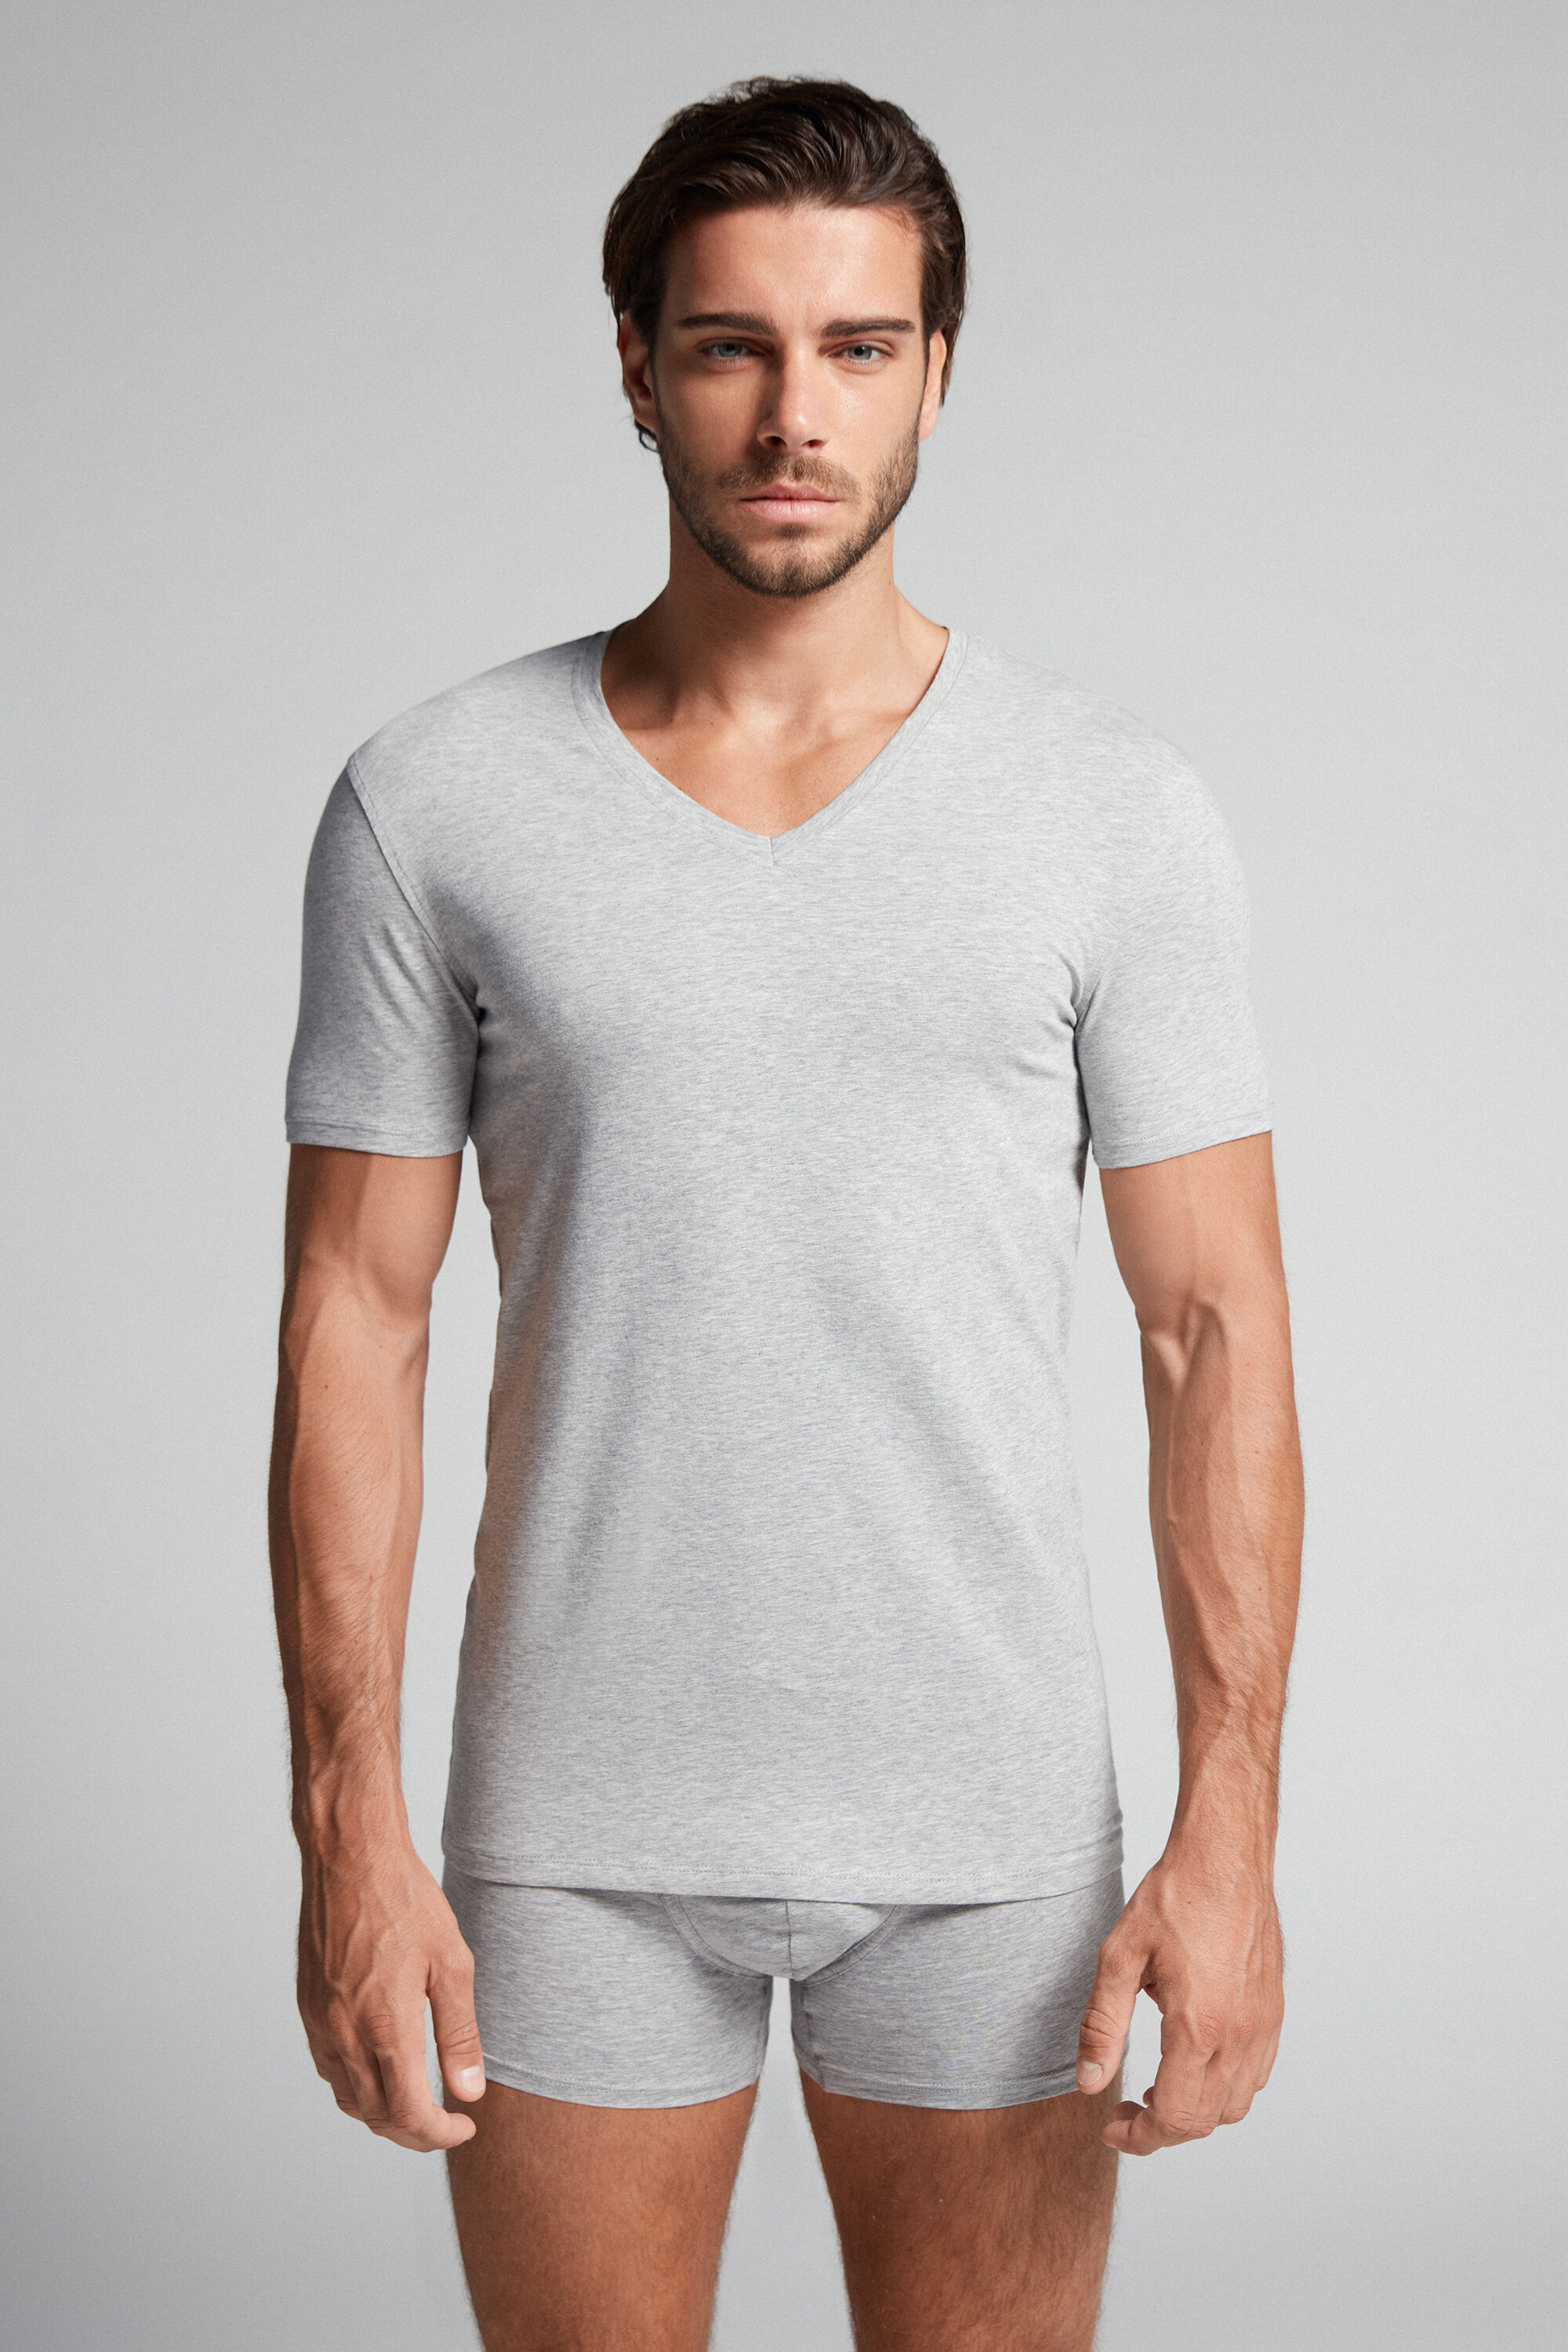 Intimissimi Stretch Superior Cotton V-Neck T-Shirt Man Grey Size XXL